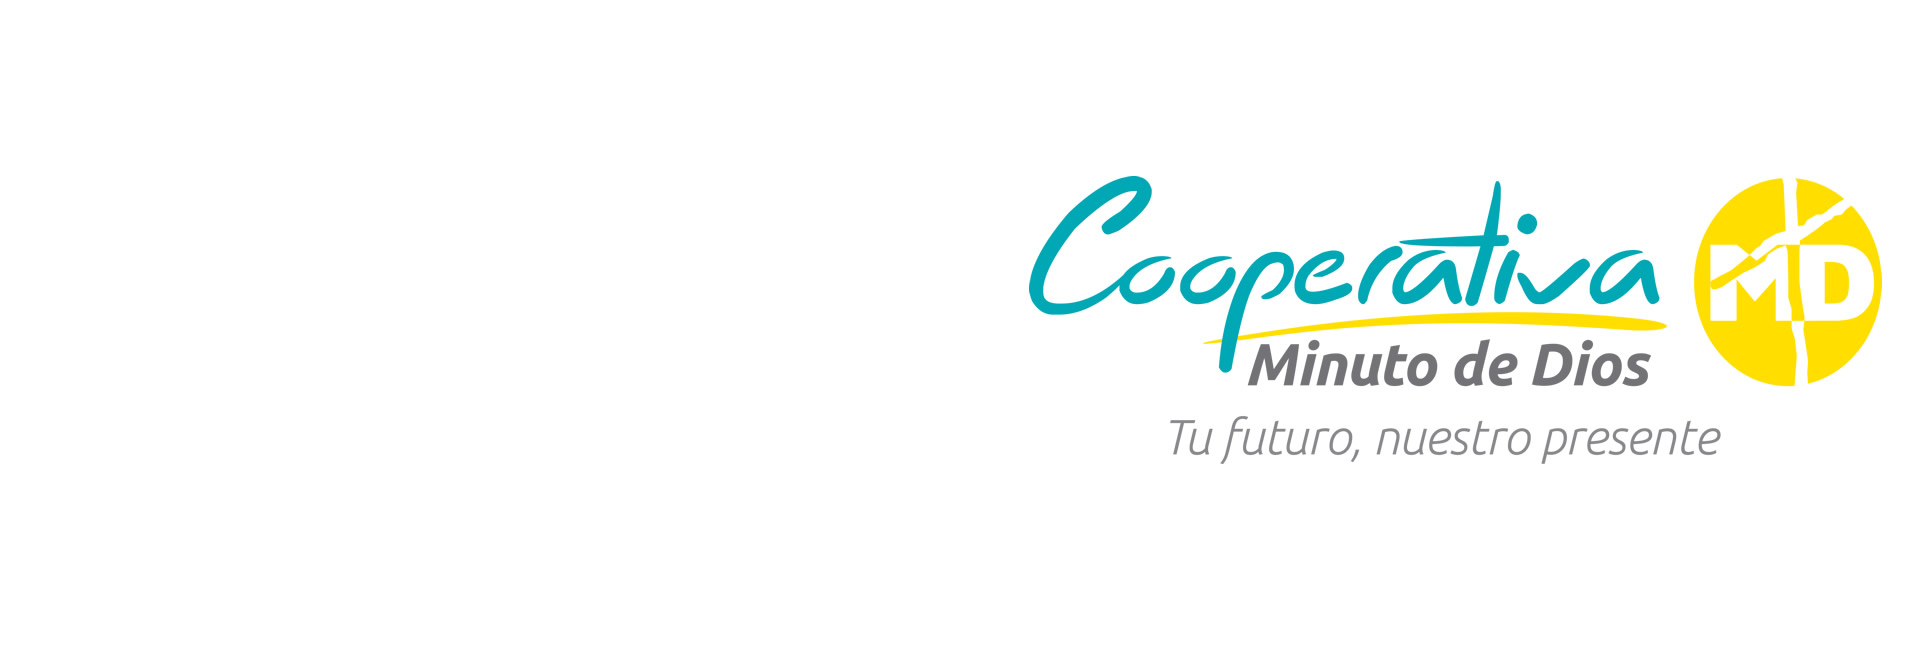 Banner sedes Cooperativa 